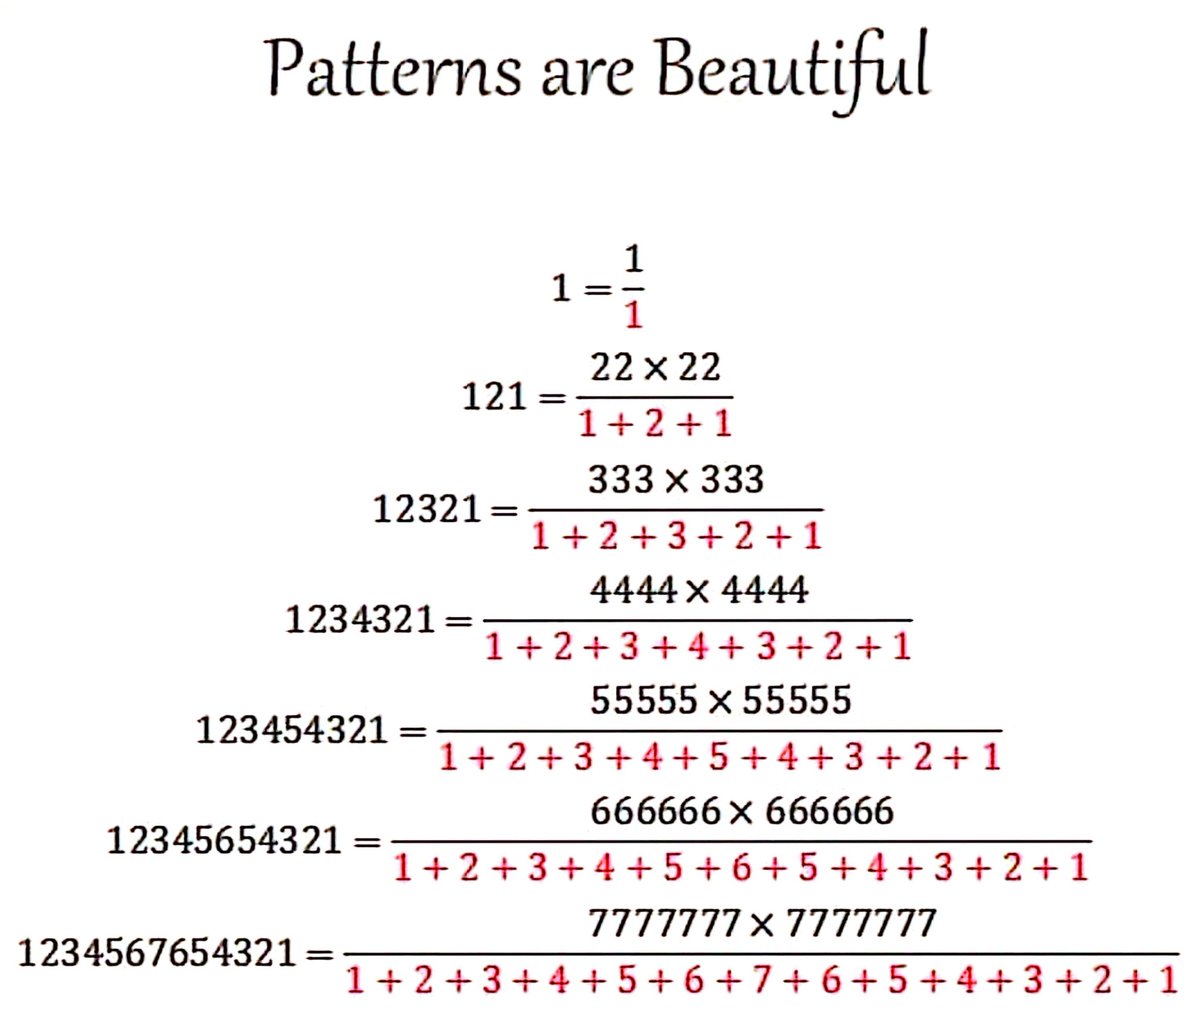 Mathematics is made up of patterns 👌

#sharingisthenewlearning